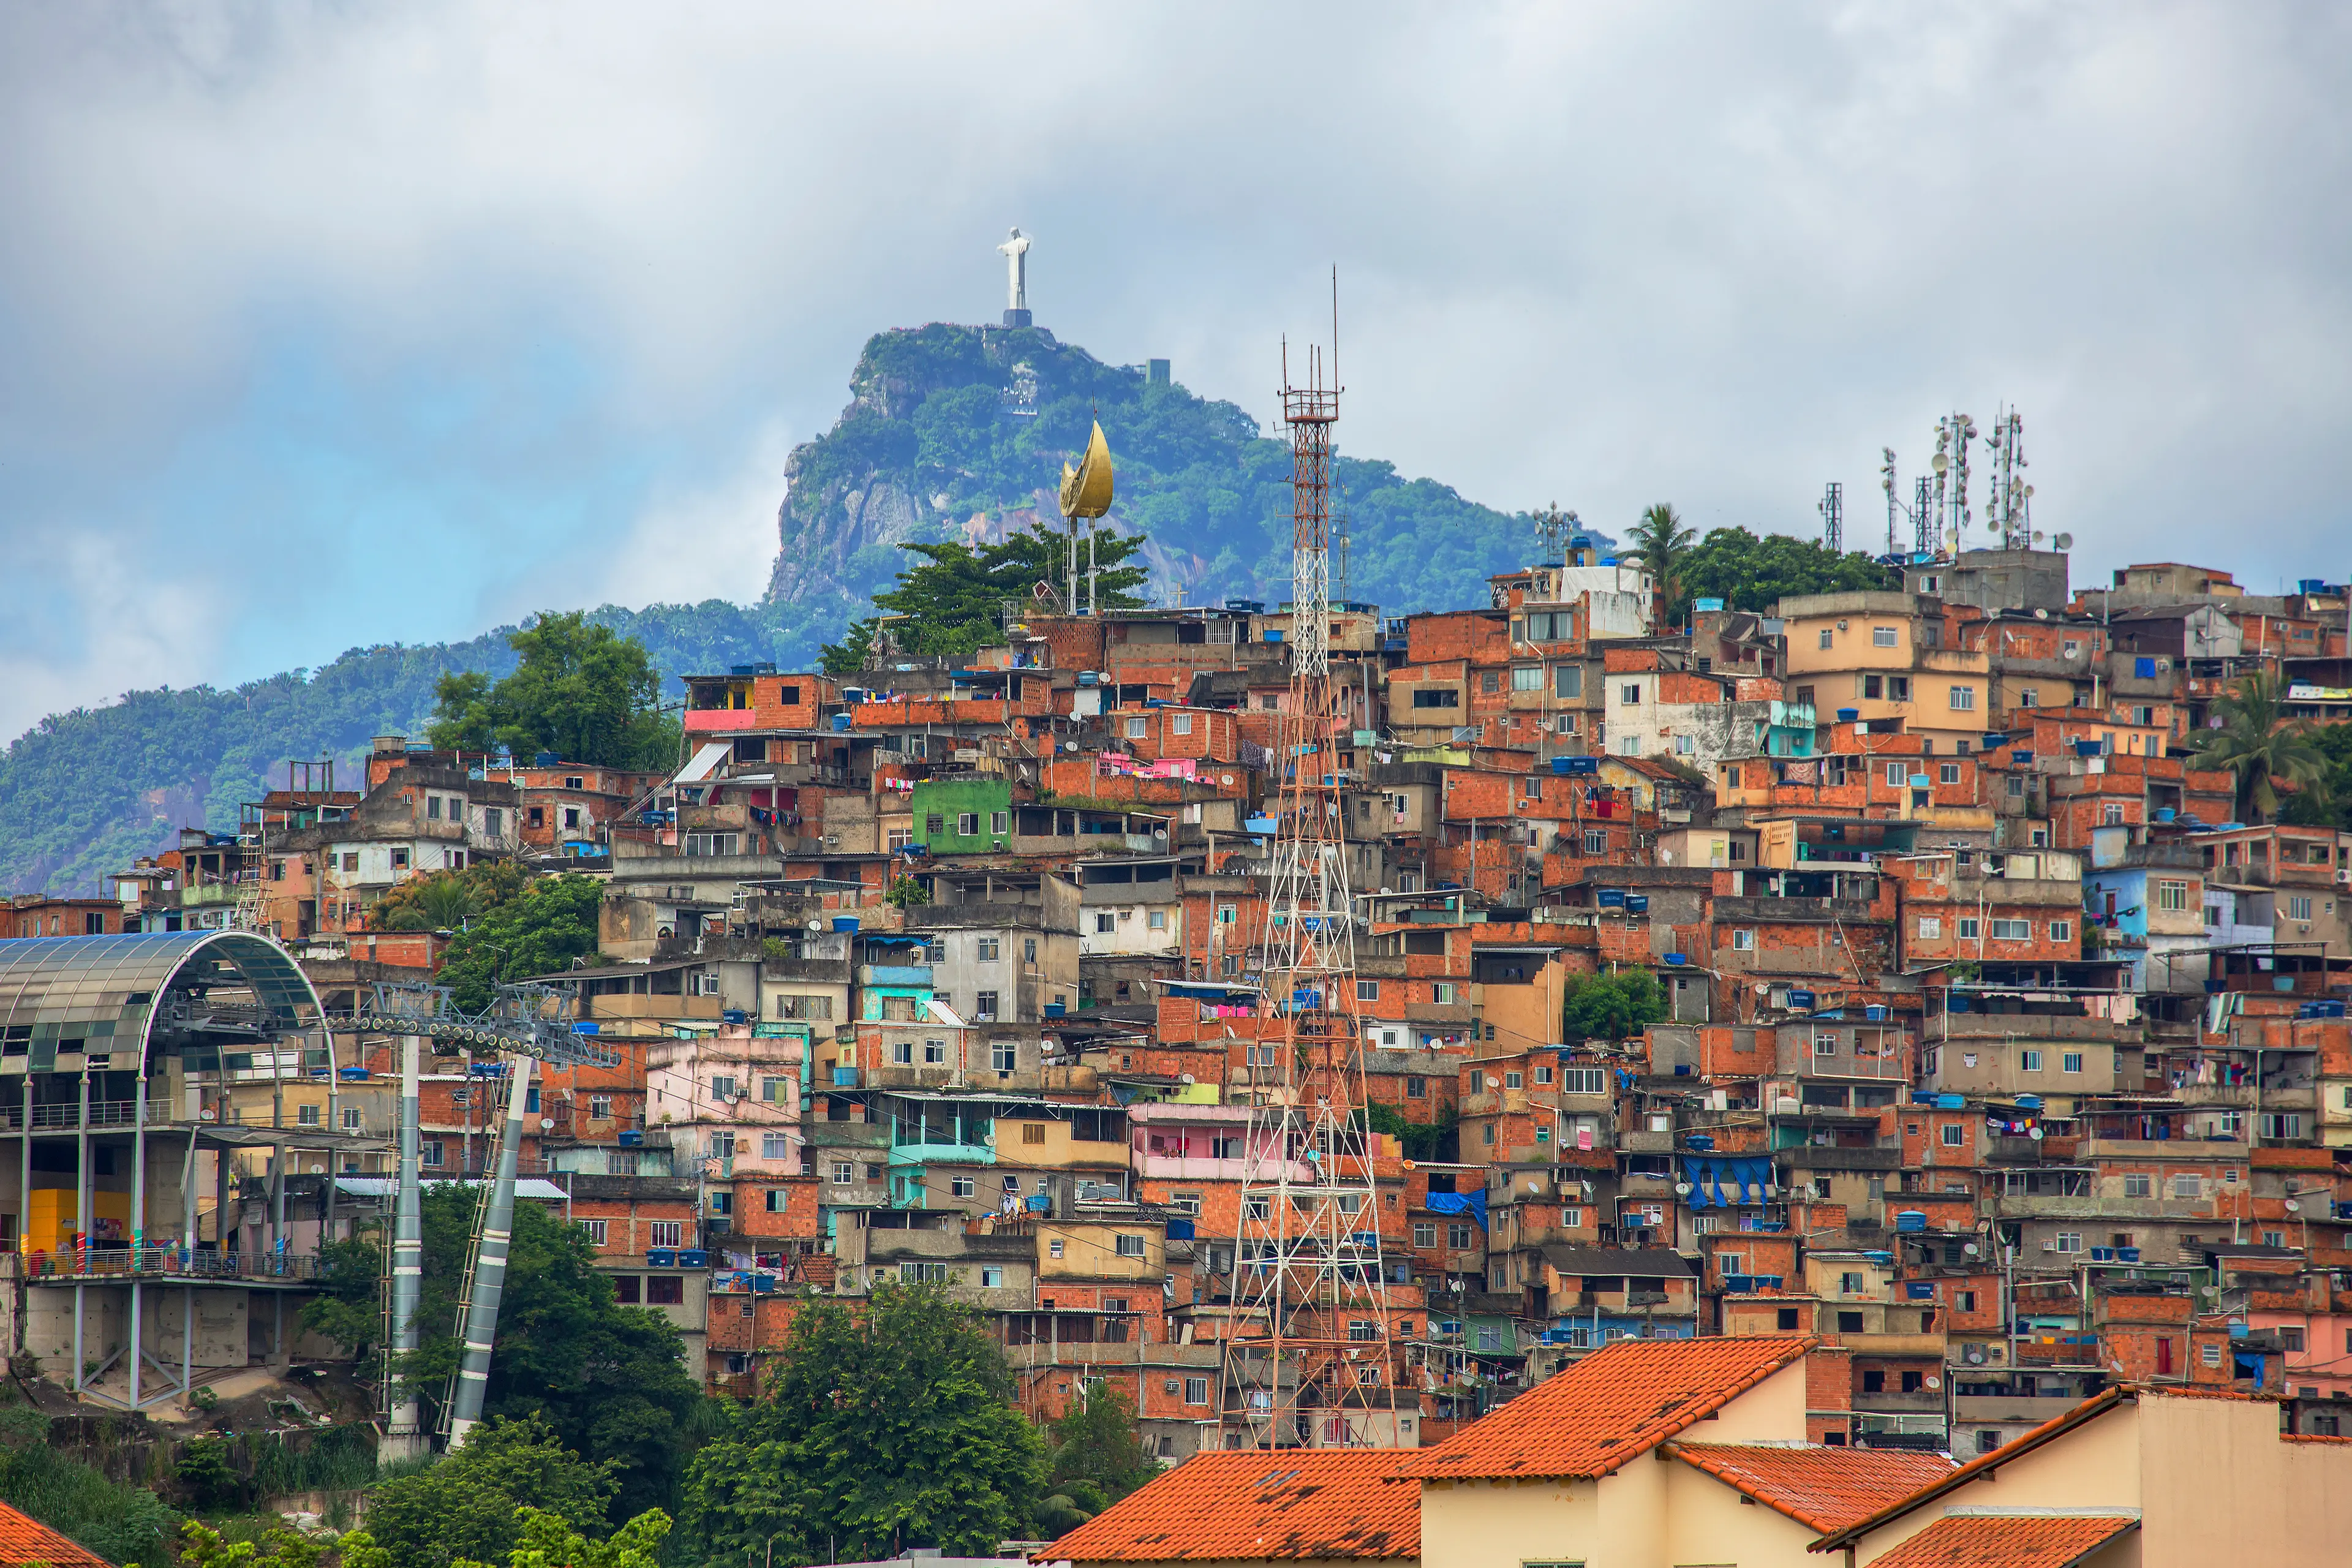 3-Day Solo Adventure: Discover Hidden Gems in Rio de Janeiro